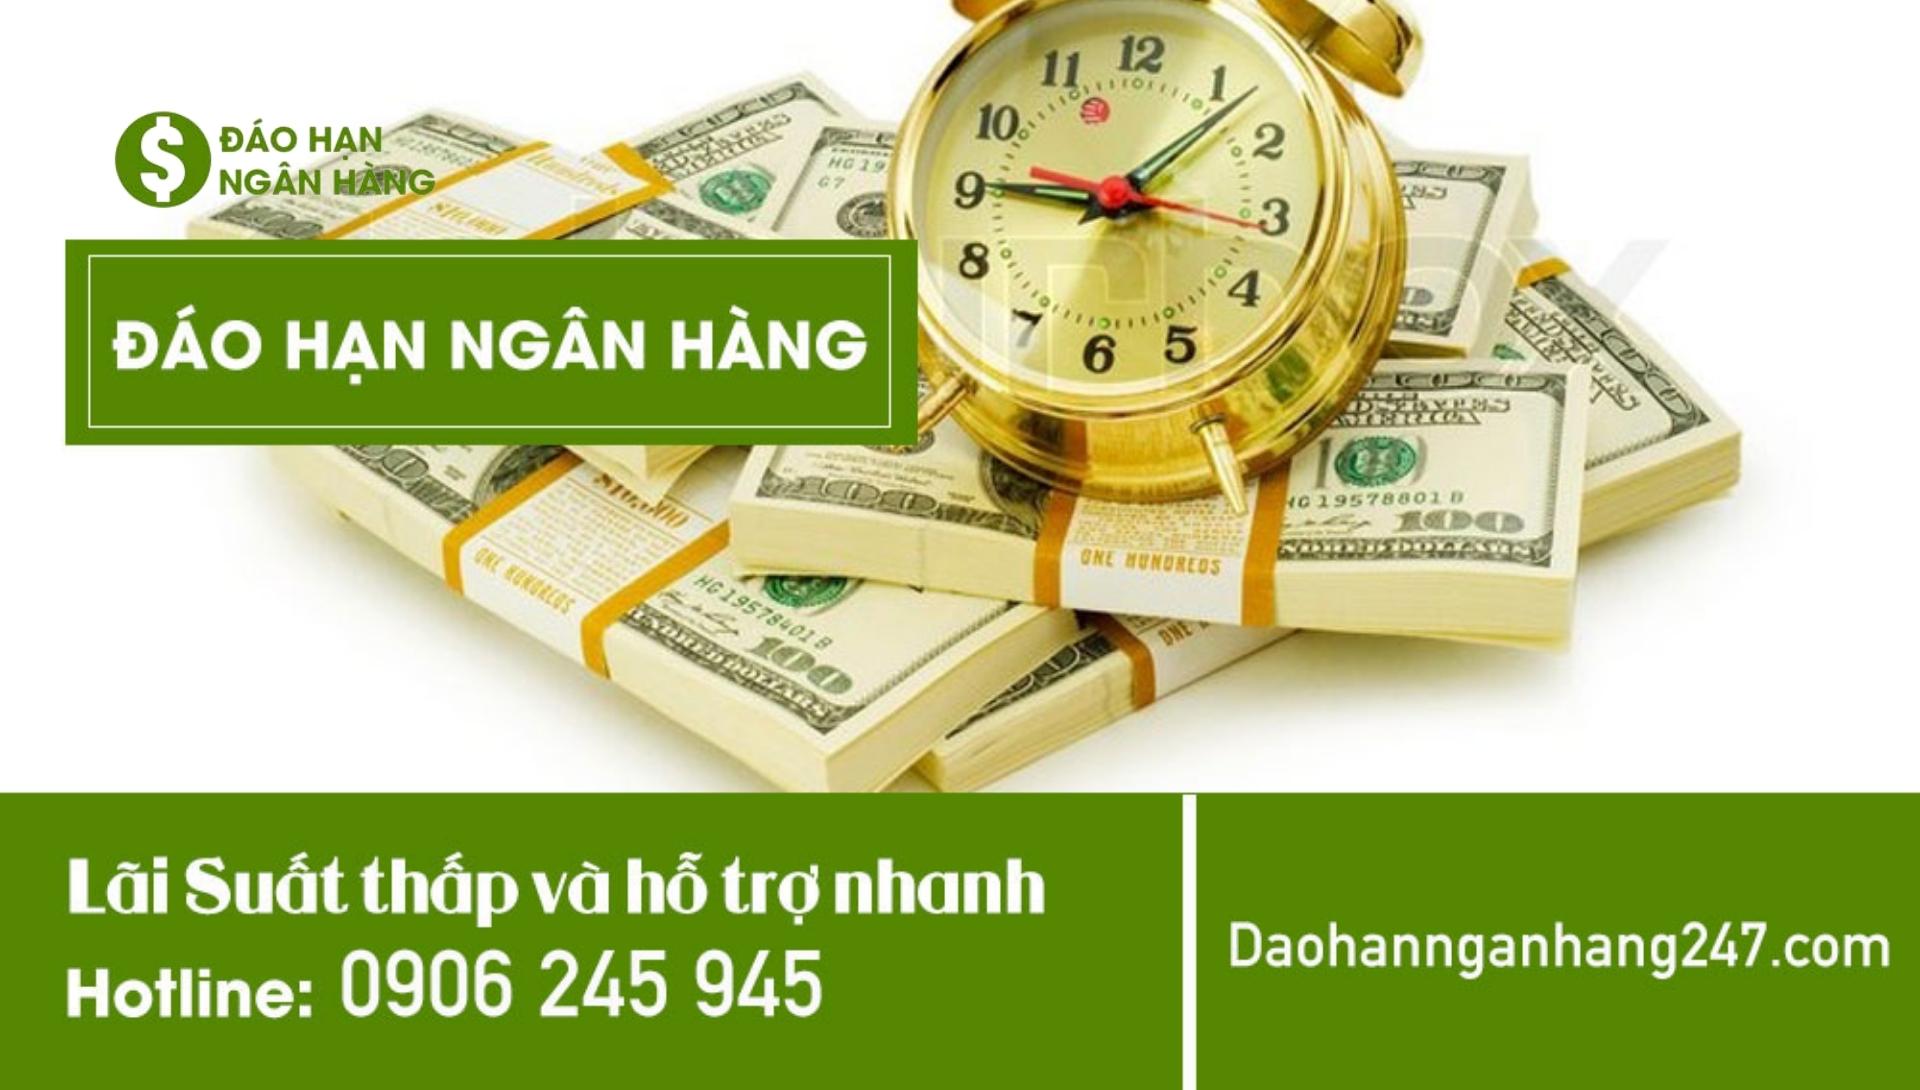 Daohannganhang247- Dịch vụ hỗ trợ vay đáo hạn VietABank chi phí số 1 khu vực Miền Nam